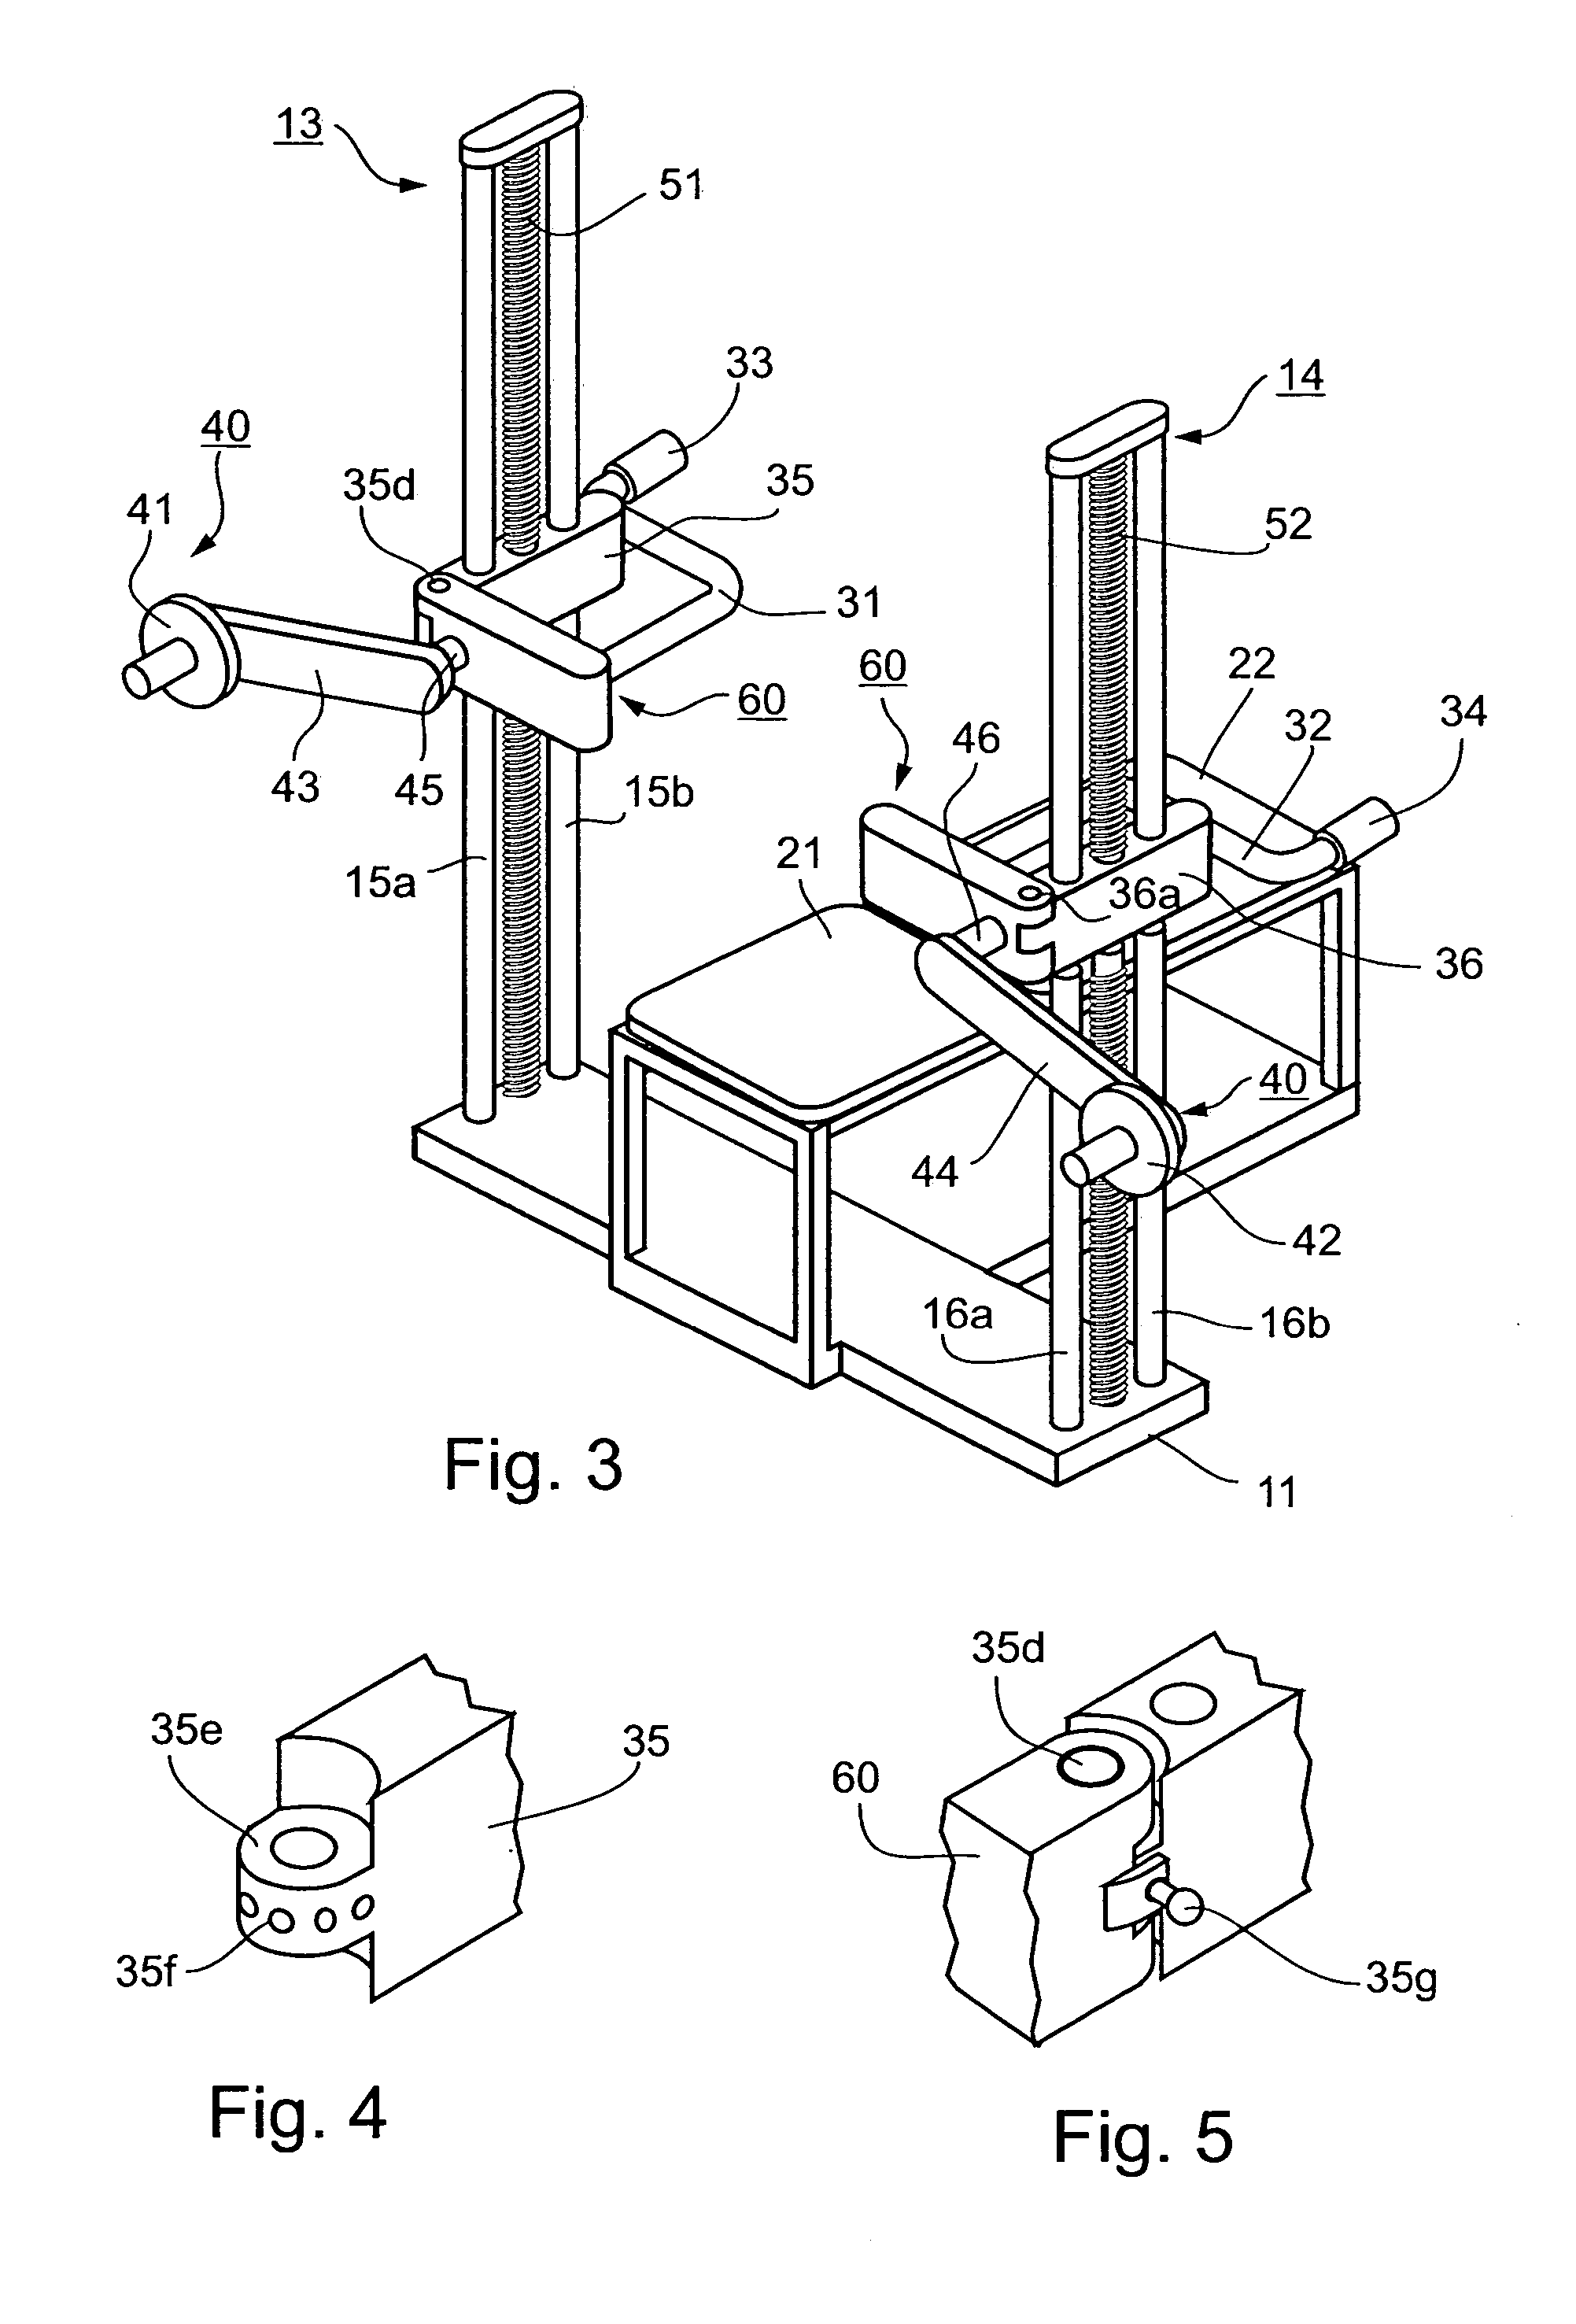 Multi-function exercising apparatus